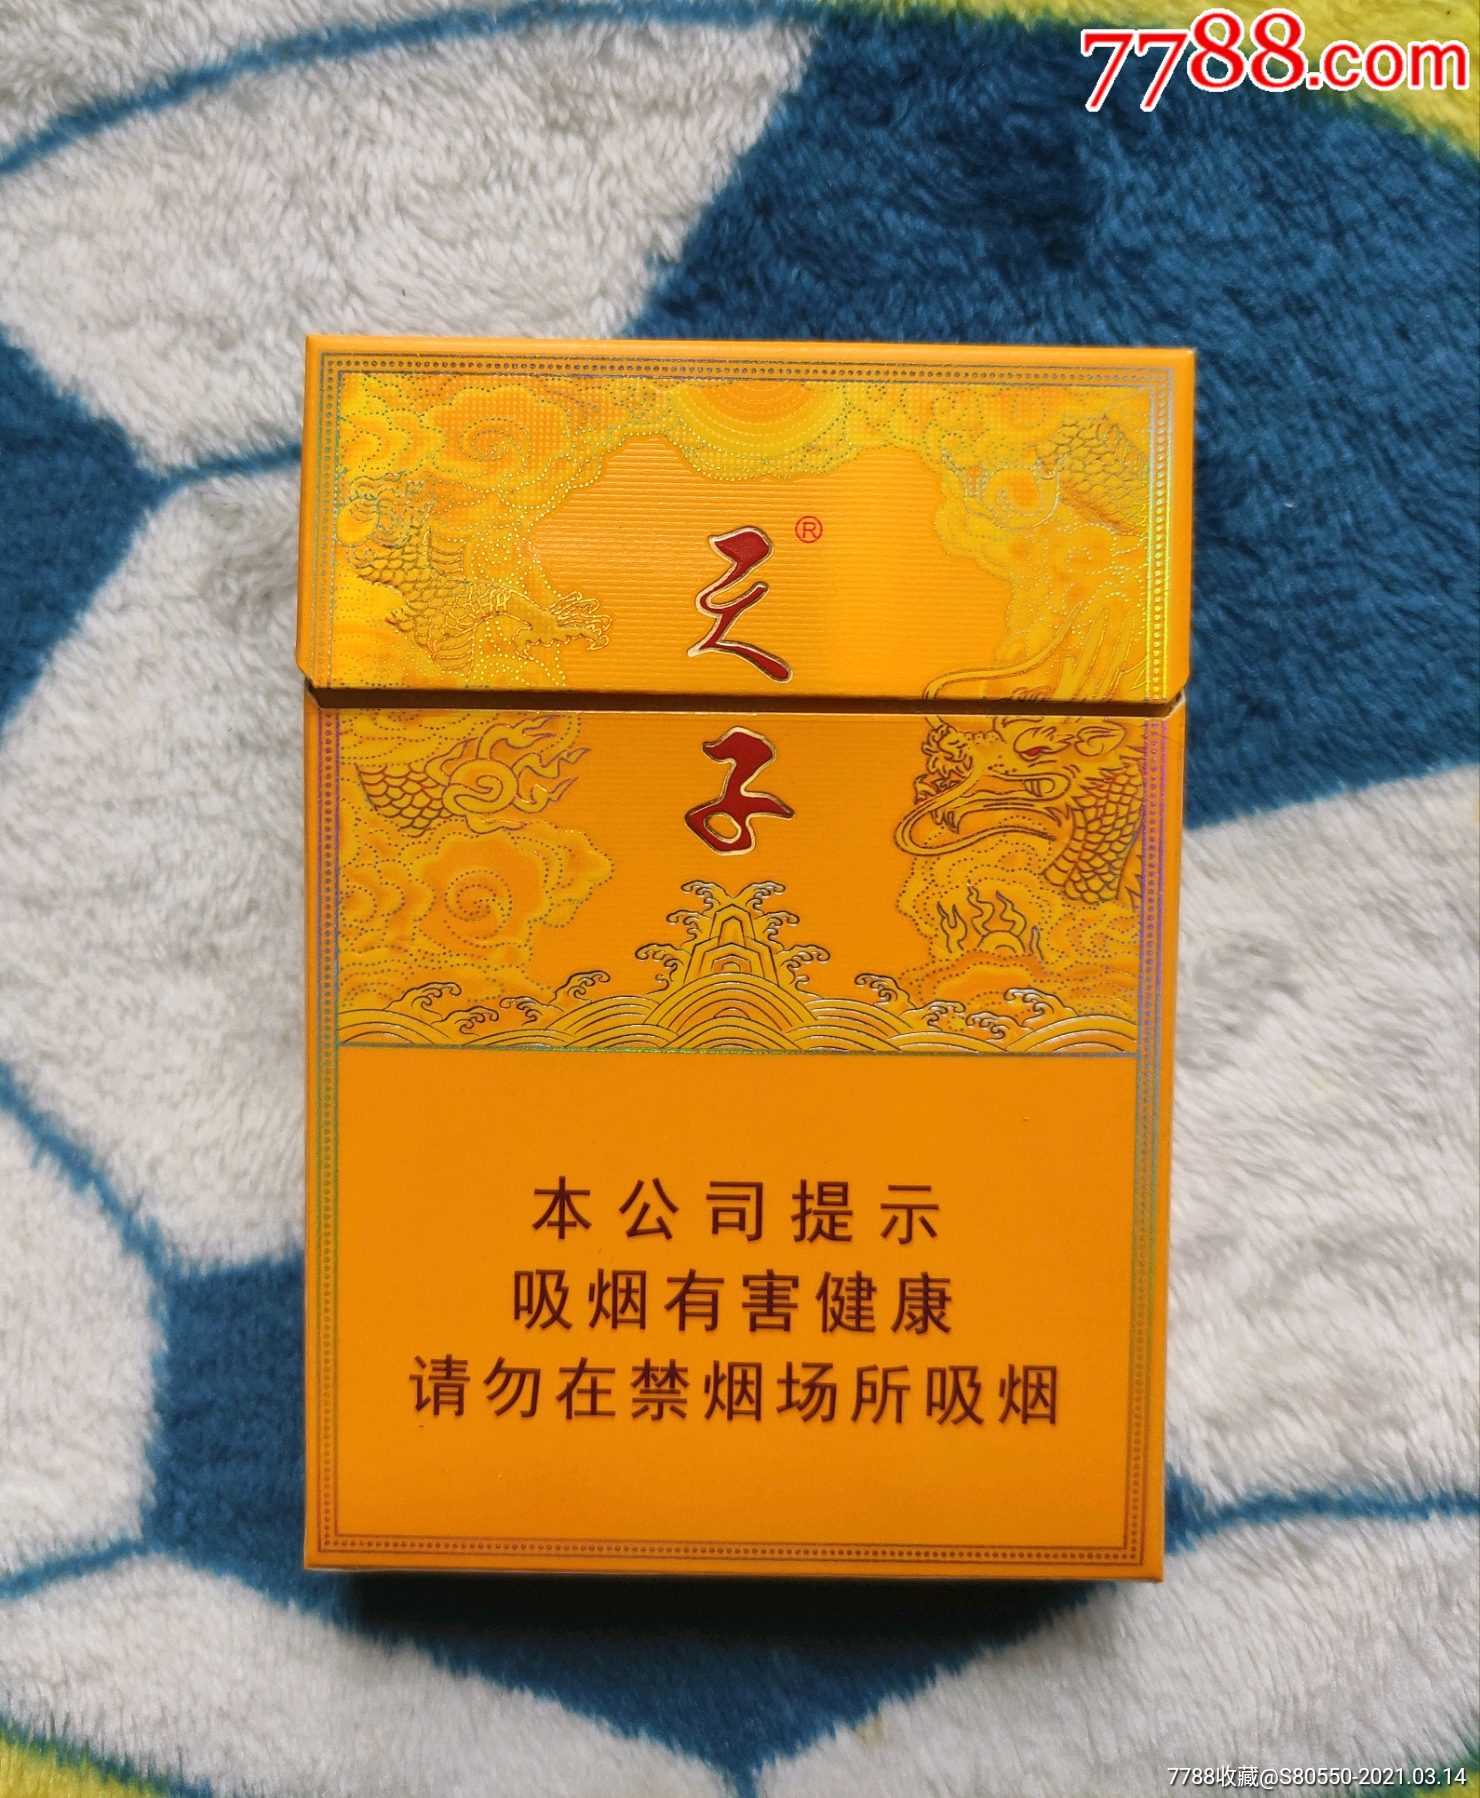 天子抽拉式烟盒图片